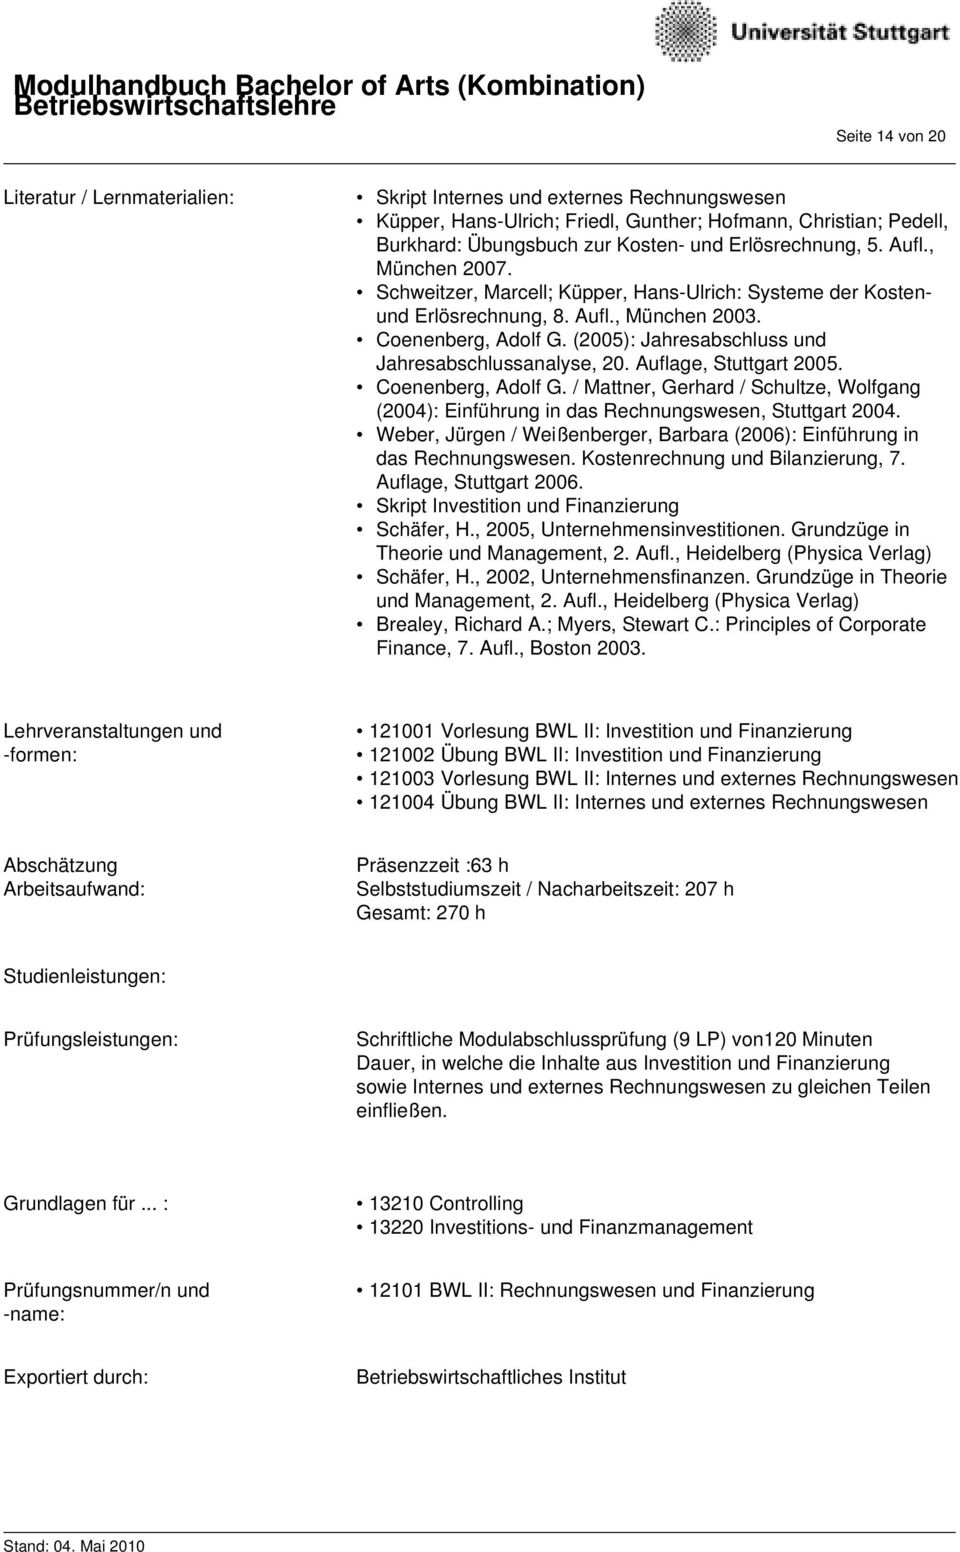 (2005): Jahresabschluss und Jahresabschlussanalyse, 20. Auflage, Stuttgart 2005. Coenenberg, Adolf G. / Mattner, Gerhard / Schultze, Wolfgang (2004): Einführung in das Rechnungswesen, Stuttgart 2004.